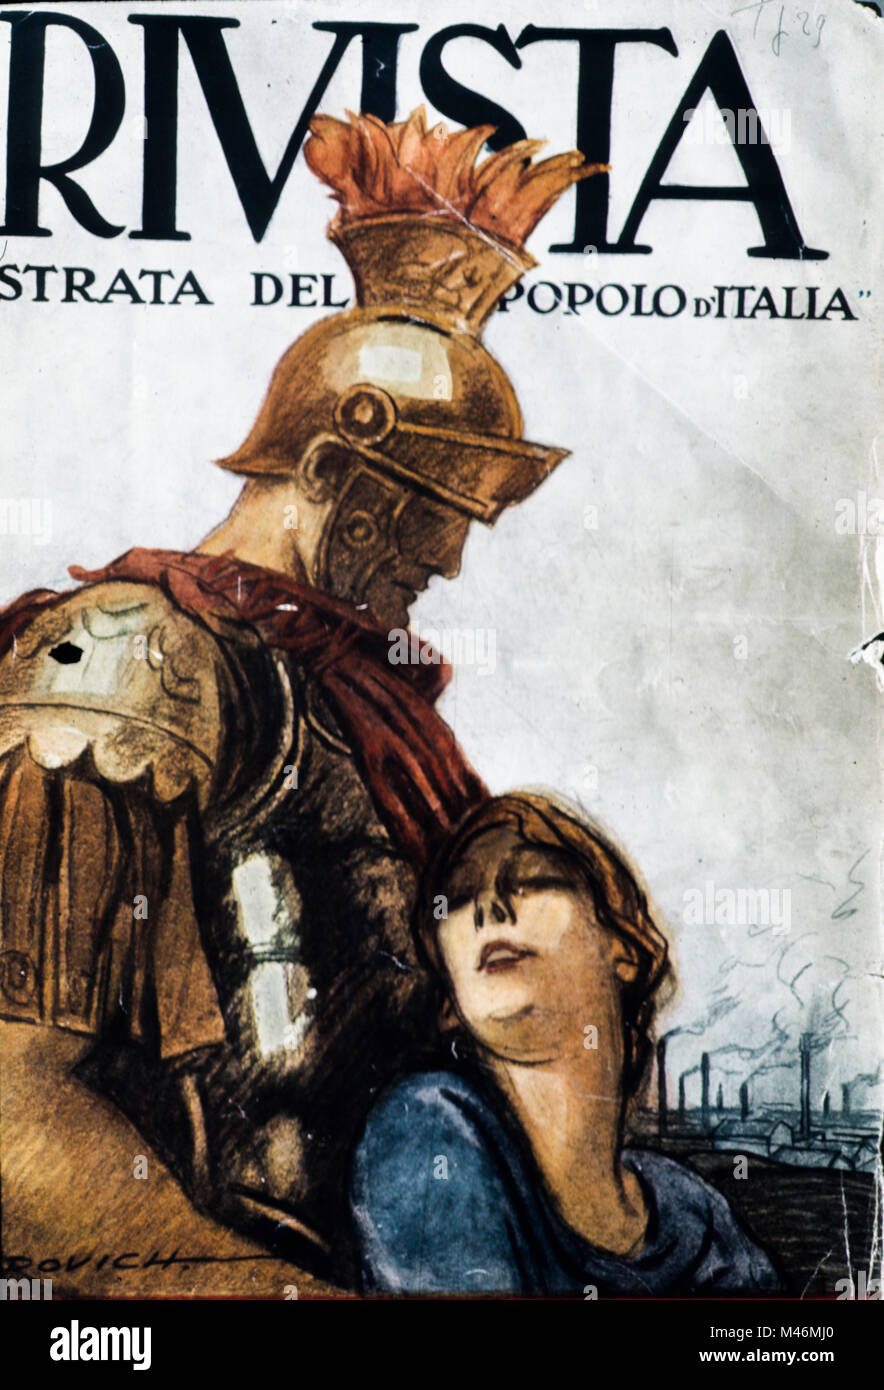 La Rivista illustrata del Popolo d'Italia, Marcello dudovich, 1923 Stockfoto